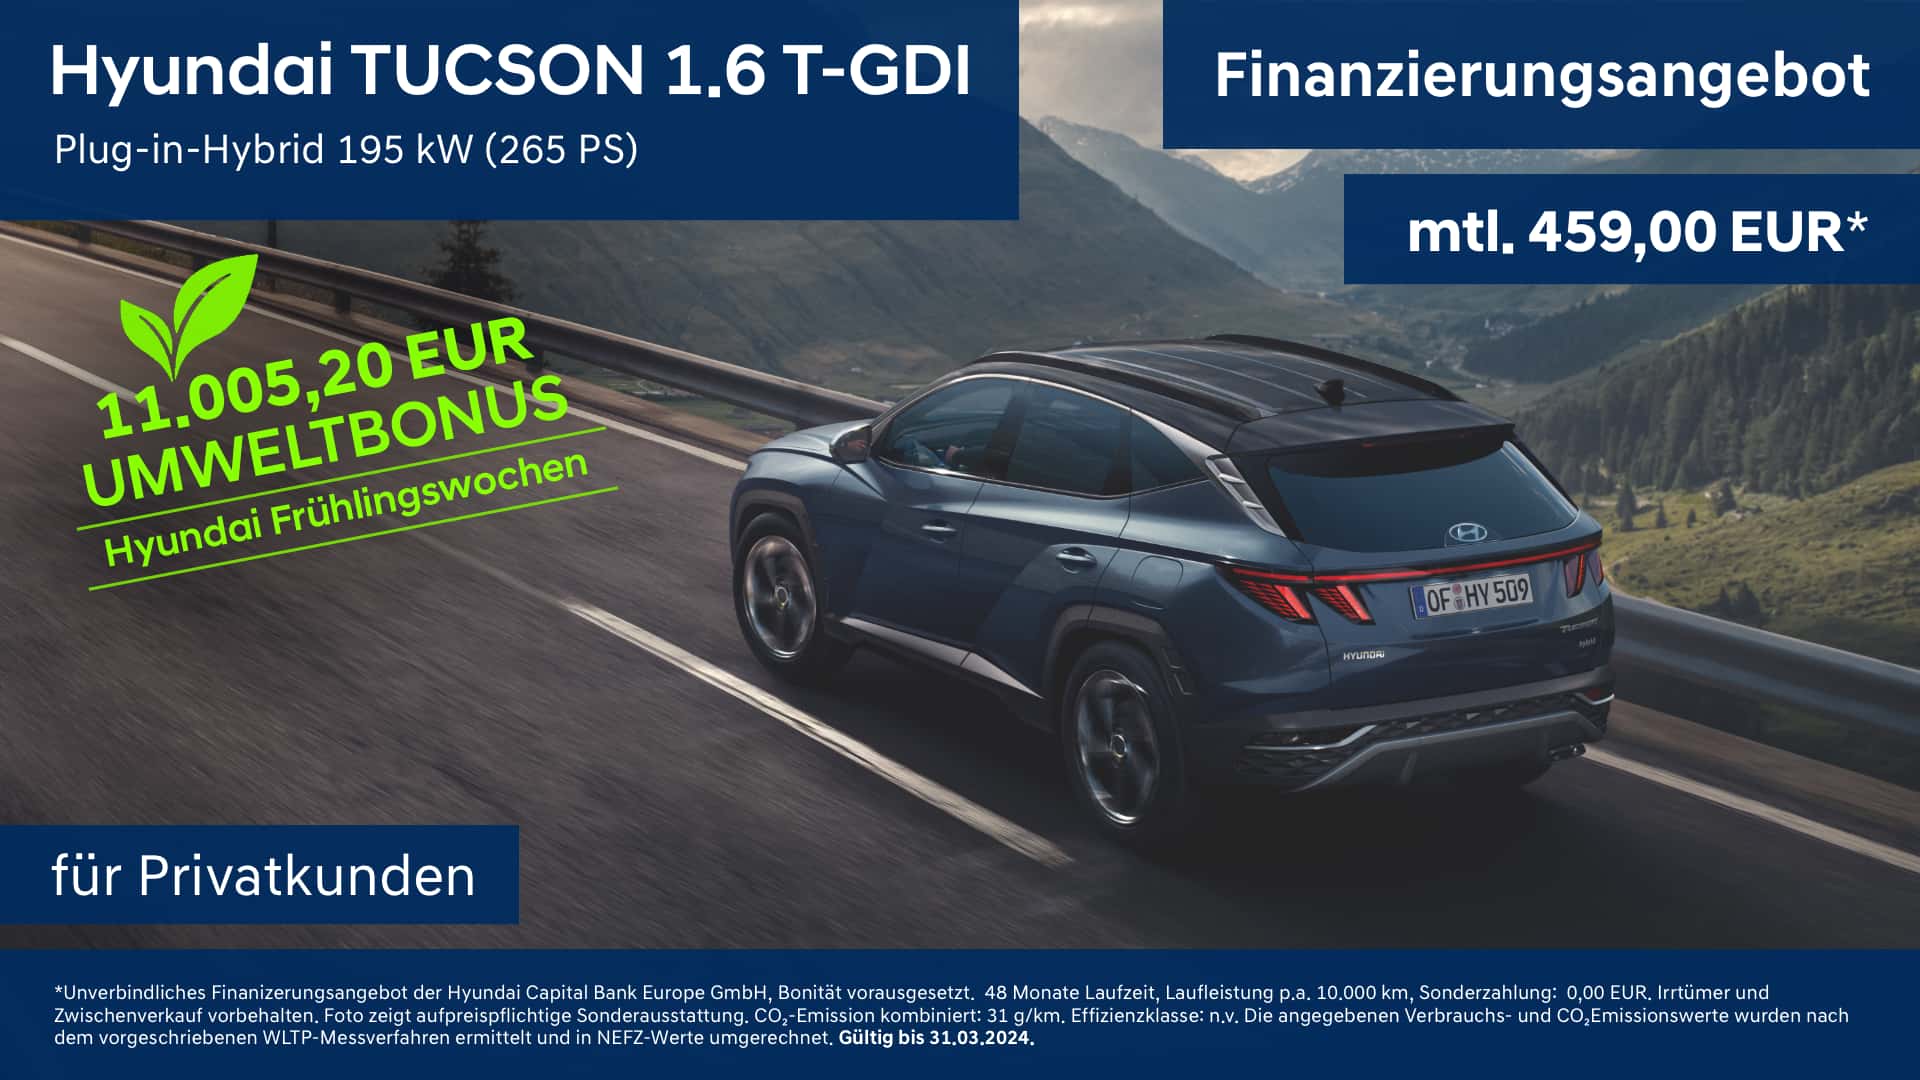 Hyundai TUCSON 1.6 T-GDI Plug-in-Hybrid Finanzierungsangebot für Privatkunden mit Umweltbonus